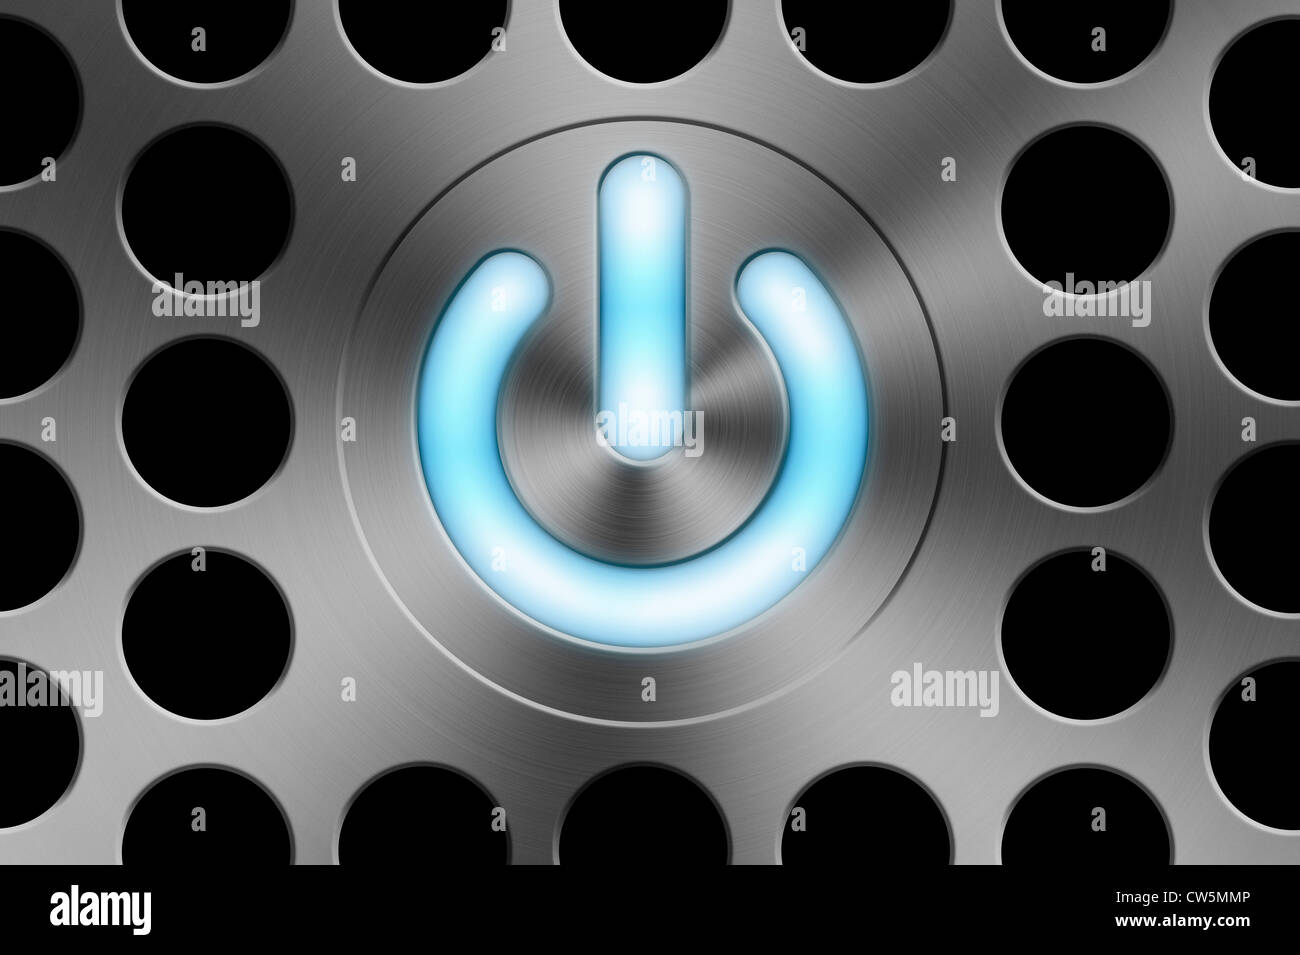 Eine blau leuchtende Computer Power/Standby- Taste auf einem Besen Aluminium Apple Mac style Hintergrund Stockfoto